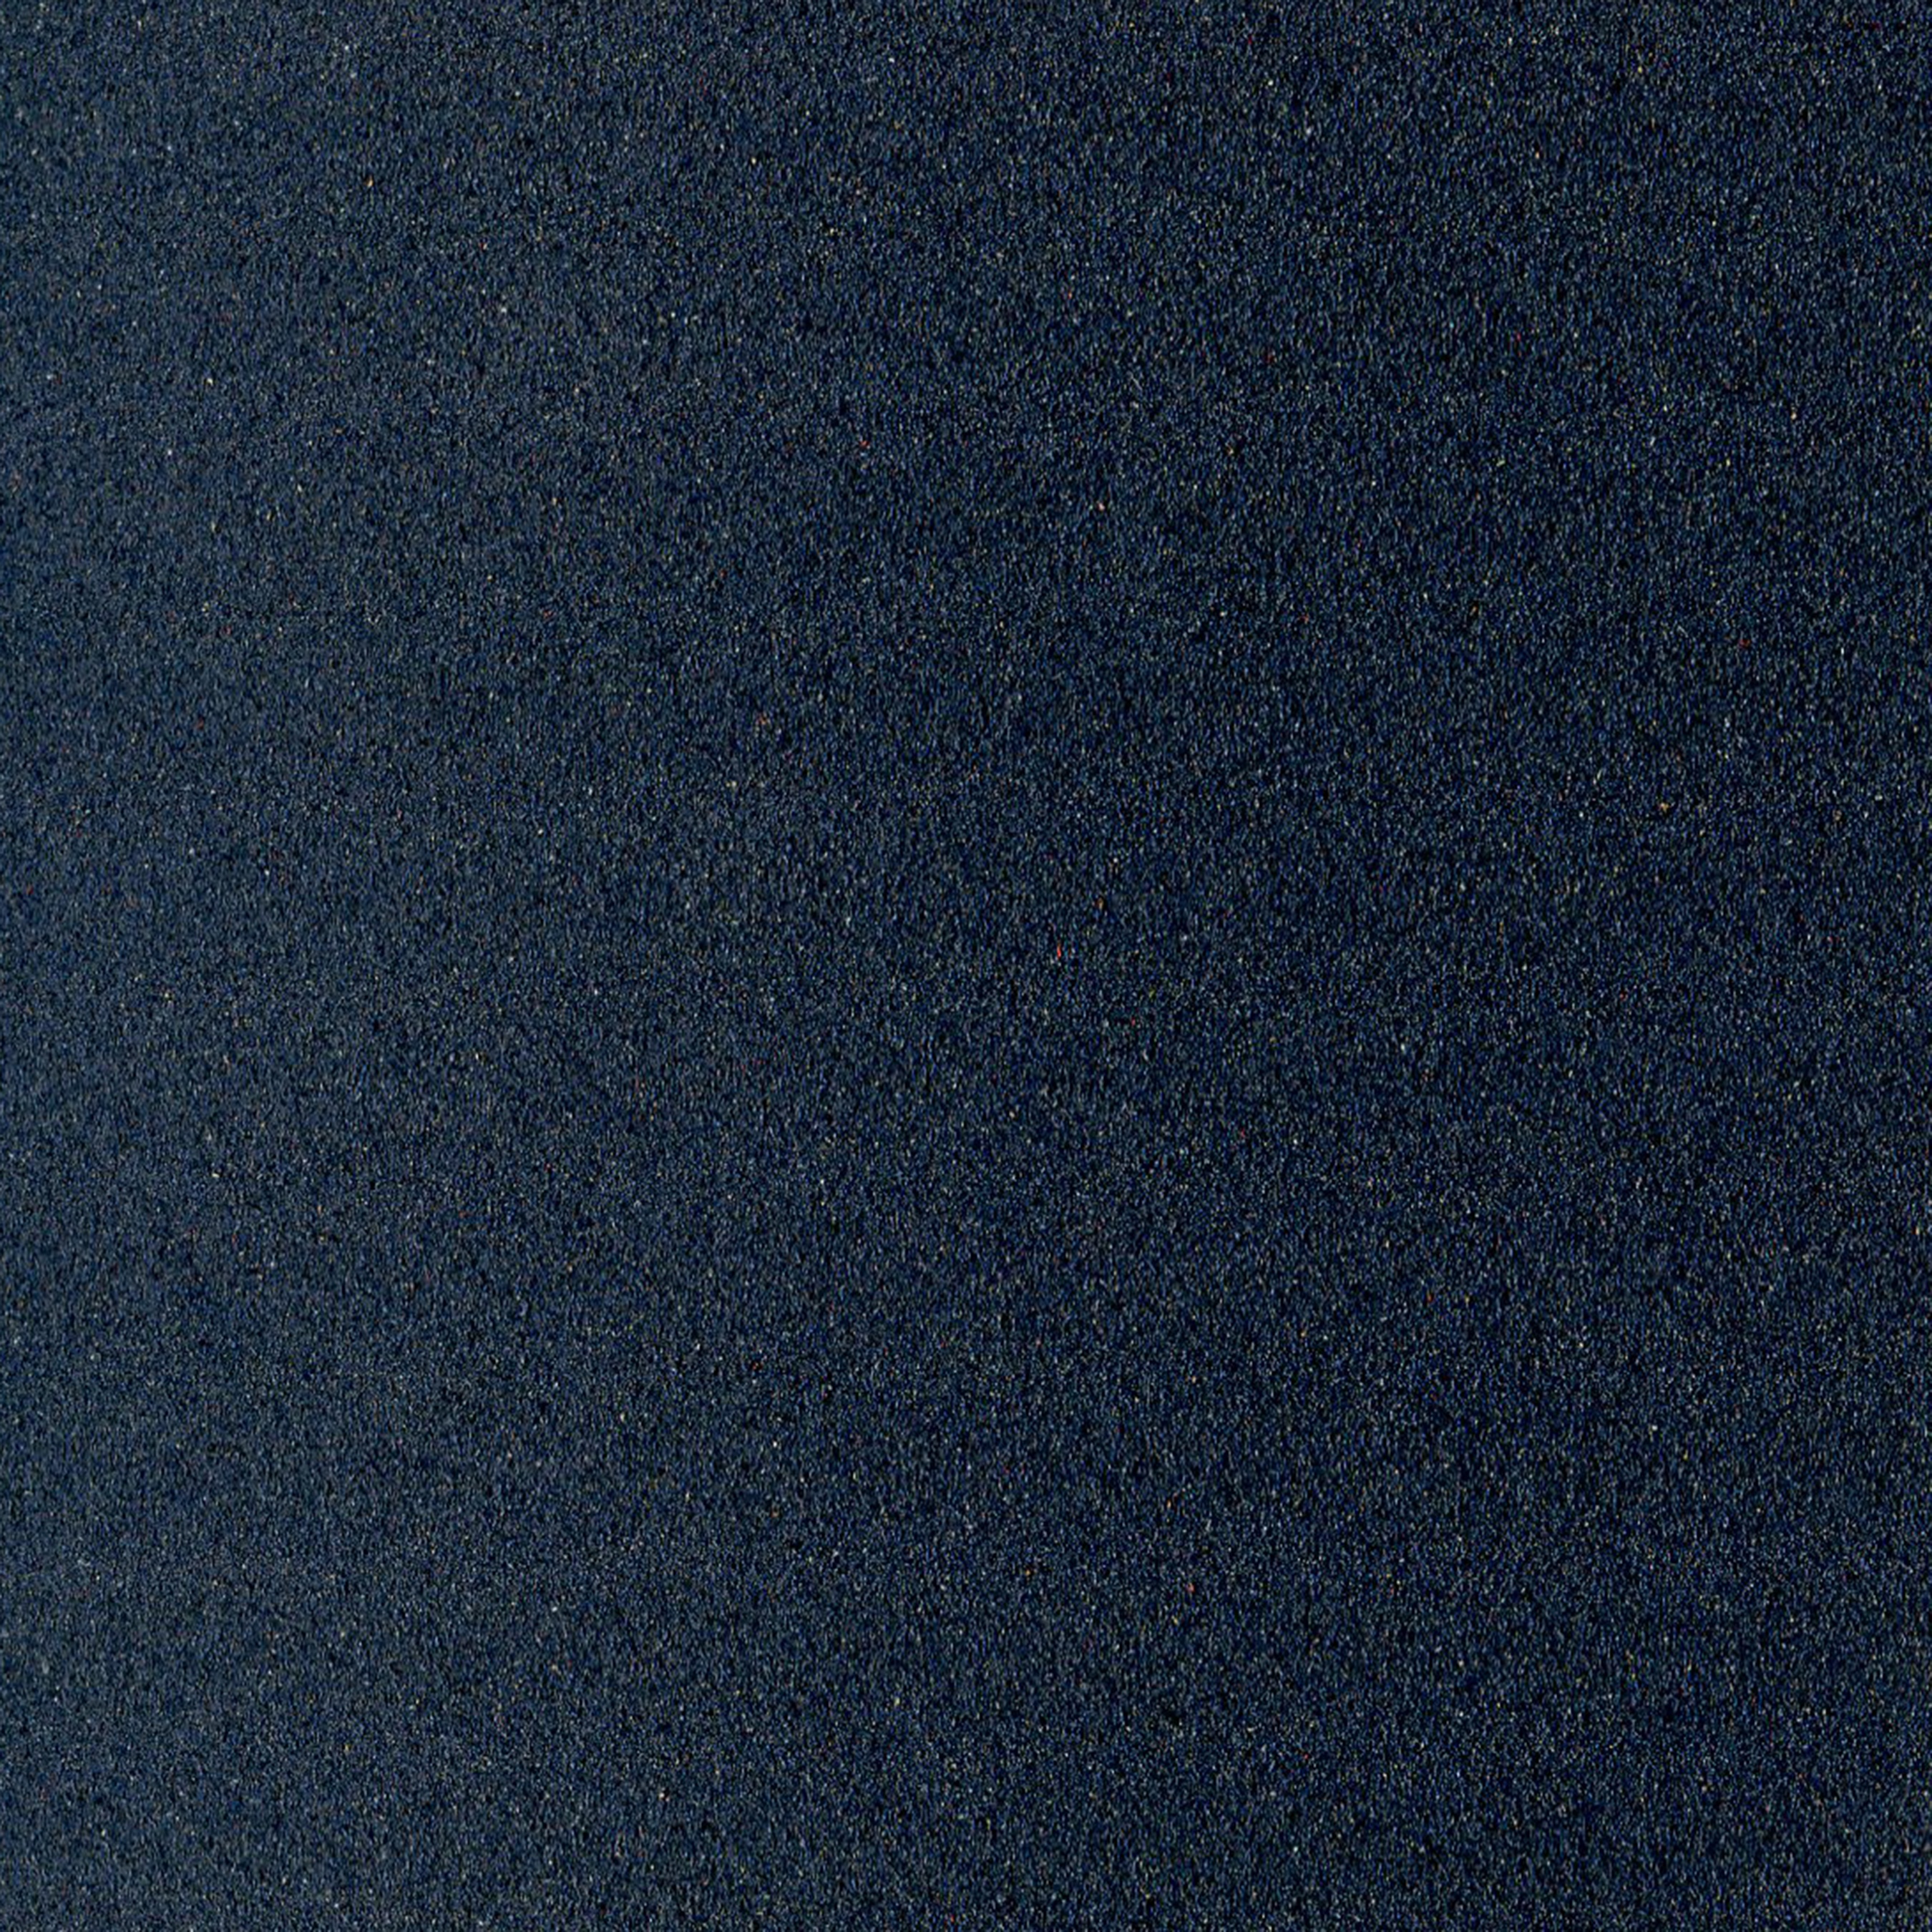 Картон для пастели PASTEL CARD 360г/кв.м 500х650мм цв.№11 сине-серый темный по 986.00 руб от Sennelier